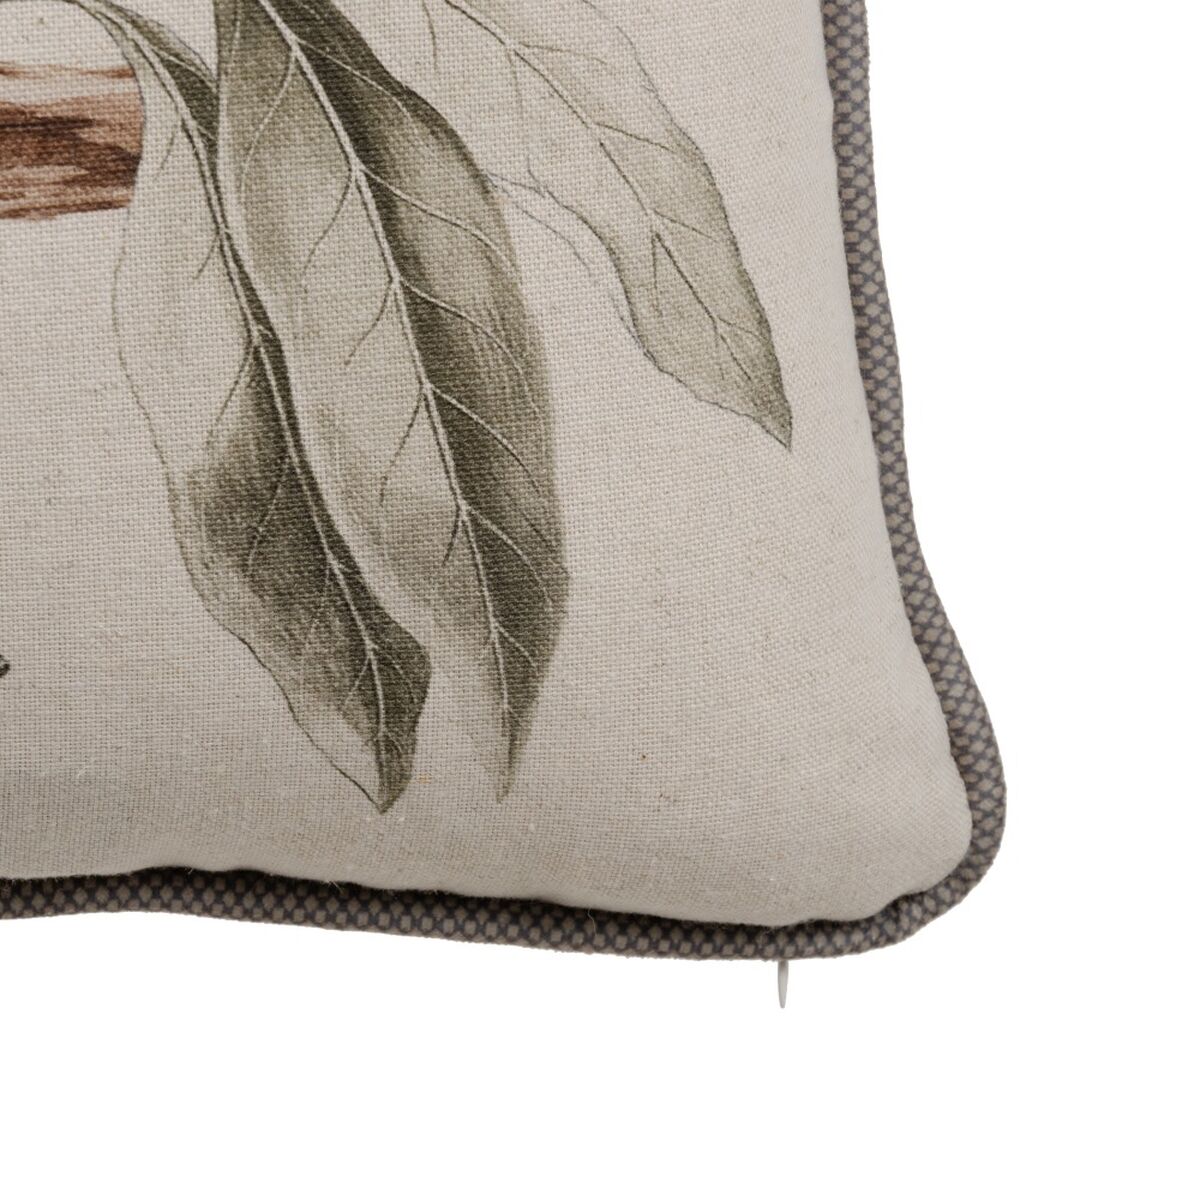 Cushion Linen 45 x 45 cm 100% cotton